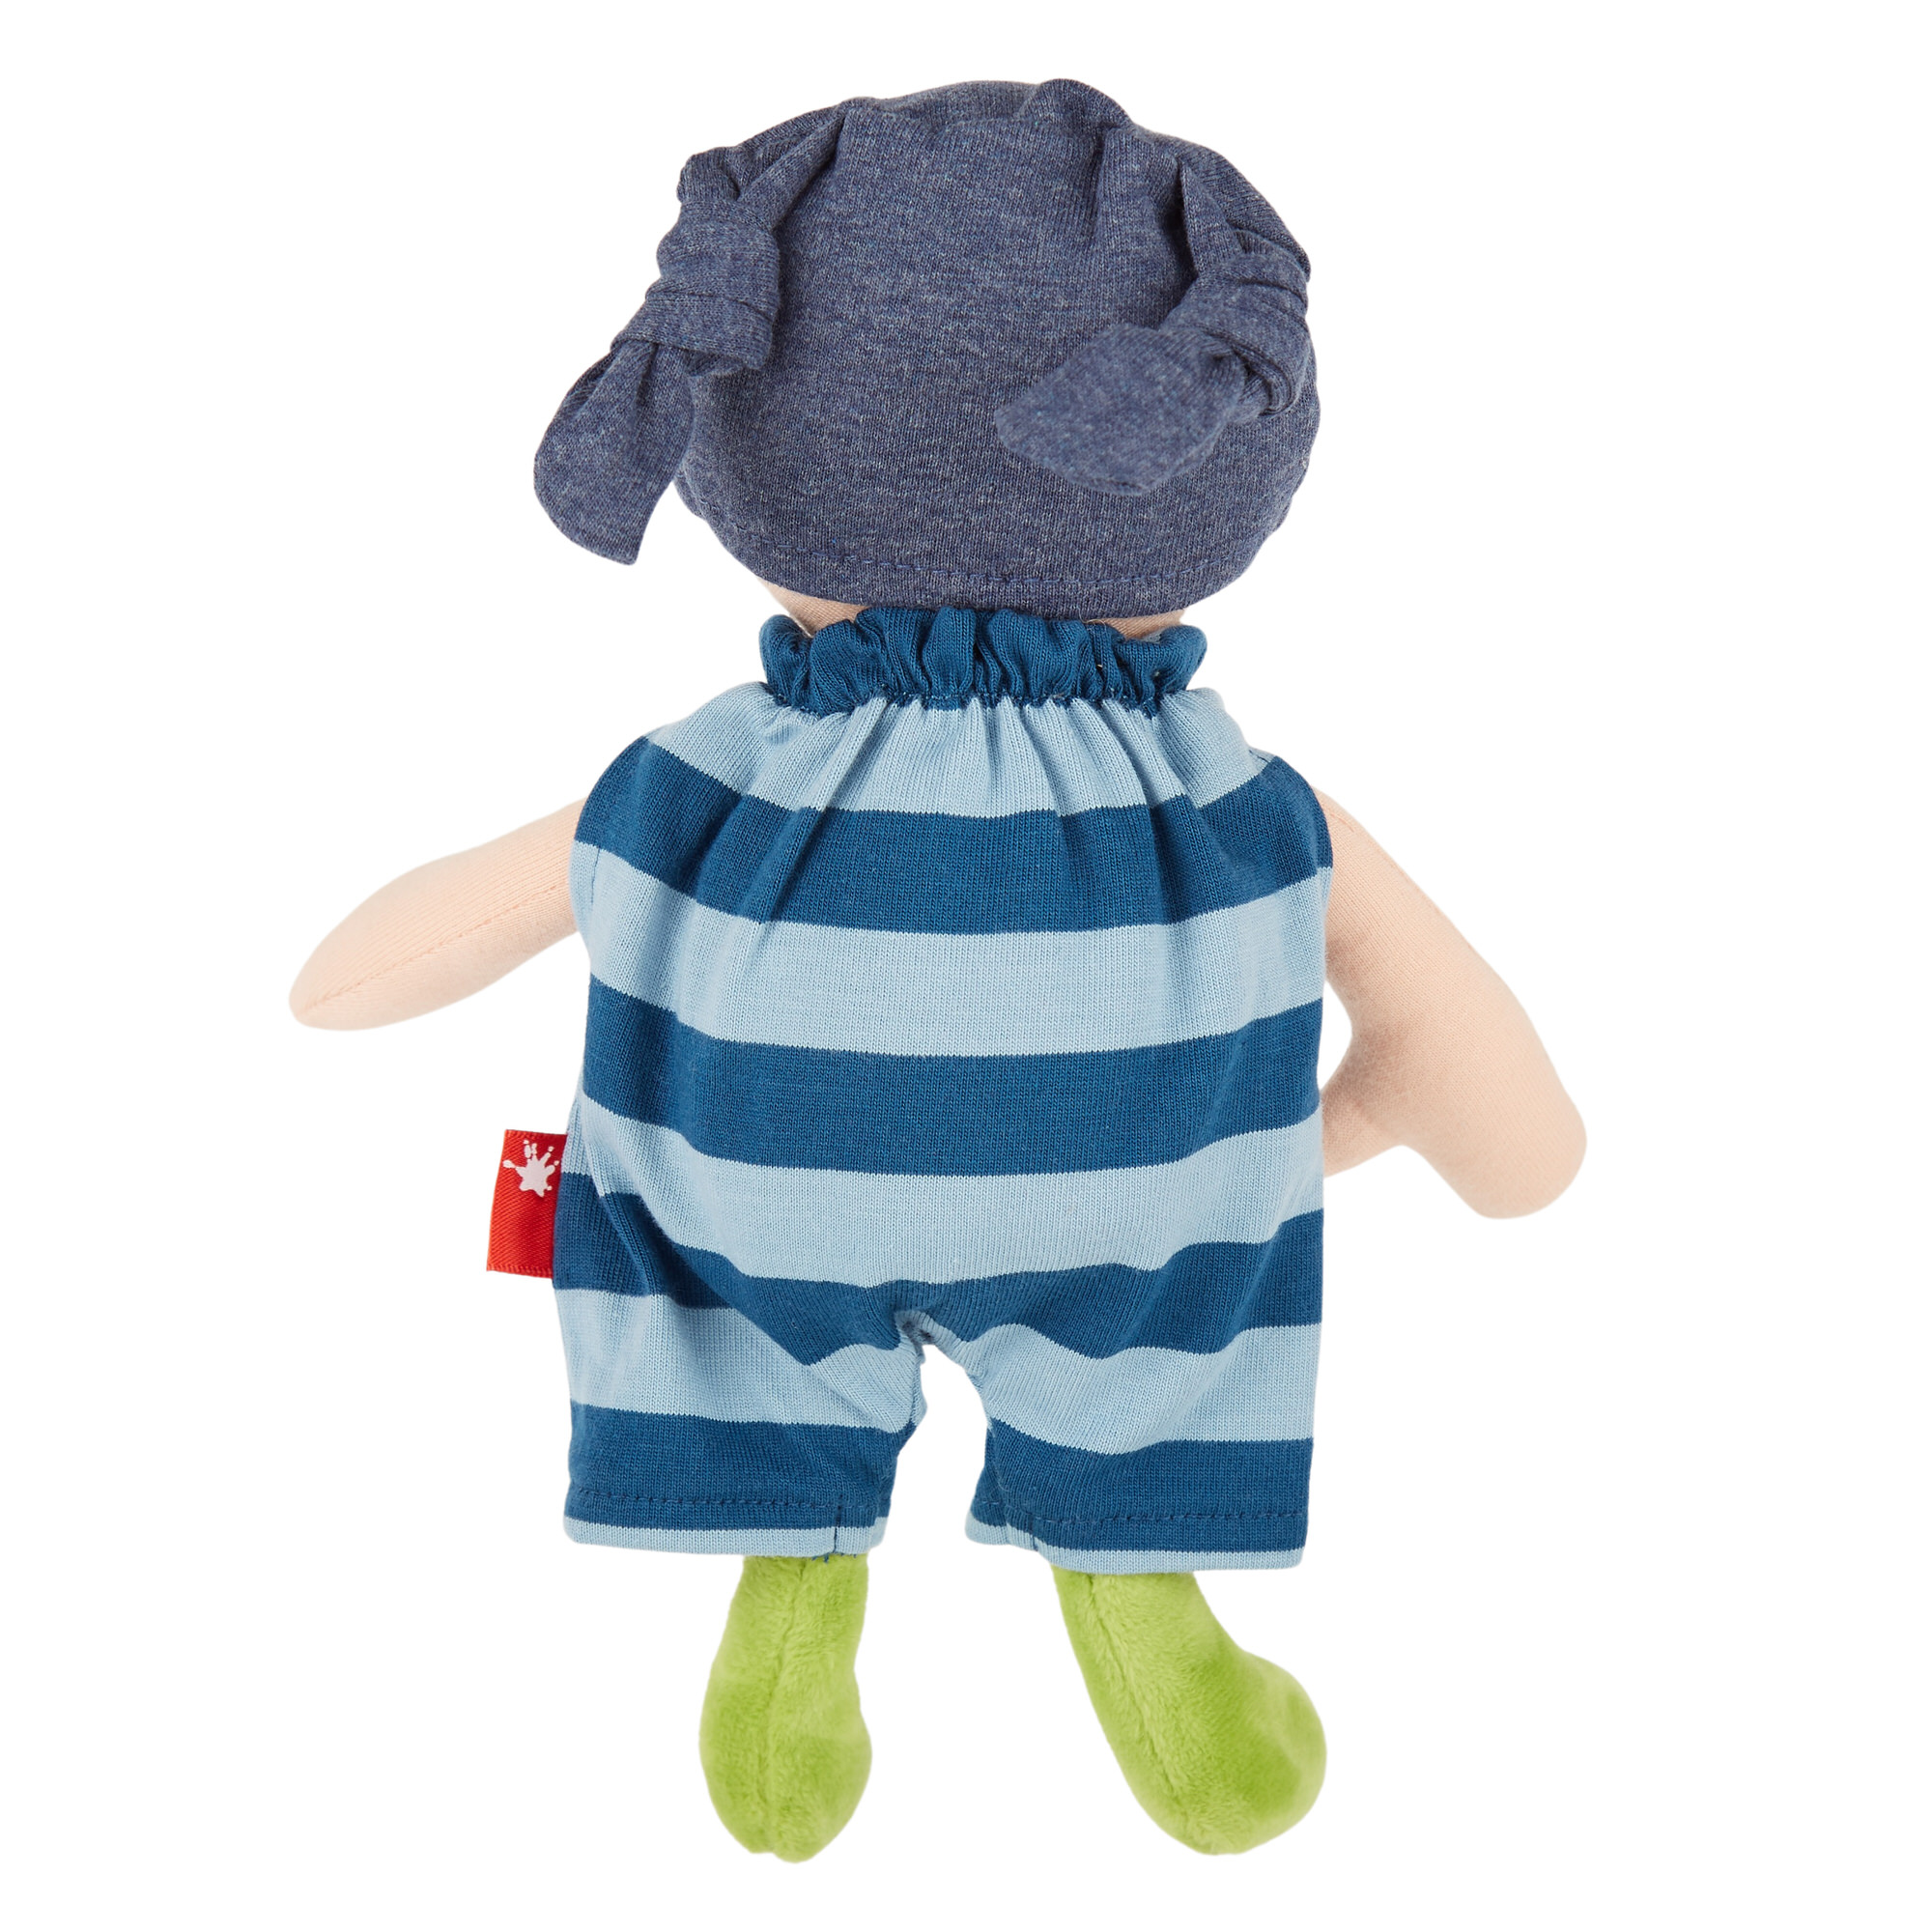 Cuddle soft doll boy, striped blue one-piece